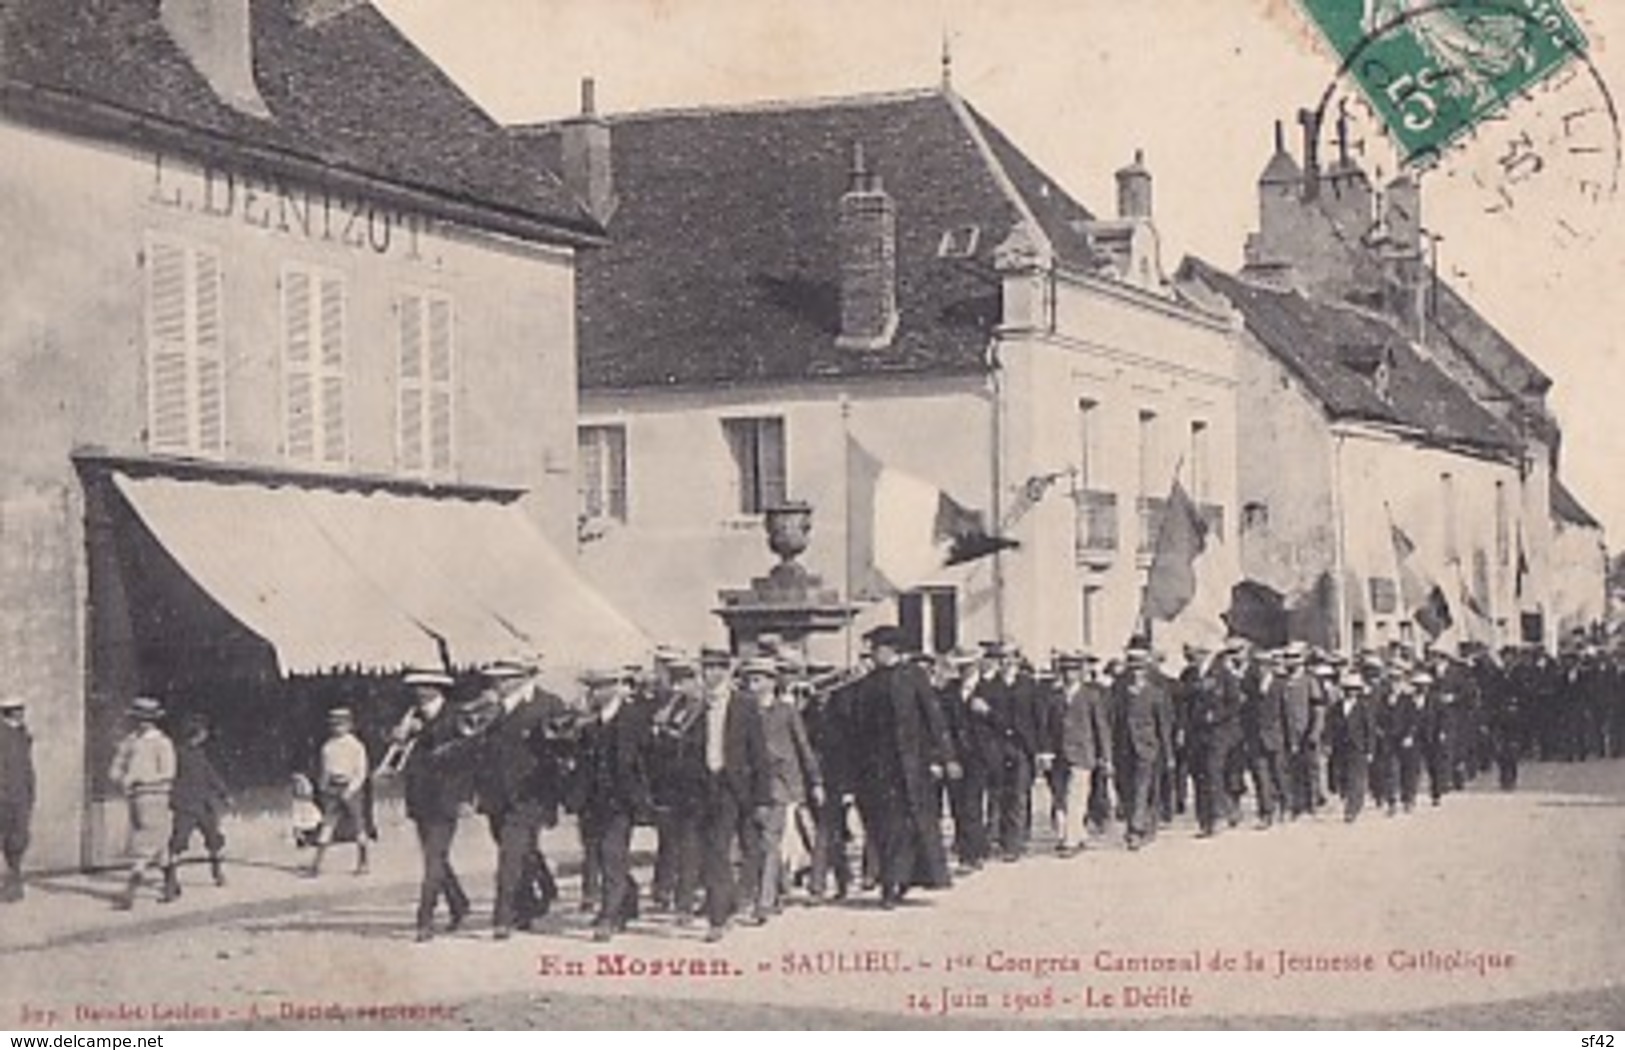 SAULIEU          1 ER CONGRES CANTONAL DE LA JEUNE CATHOLIQUE . 14 JUIN 1908.  LE DEFILE - Saulieu